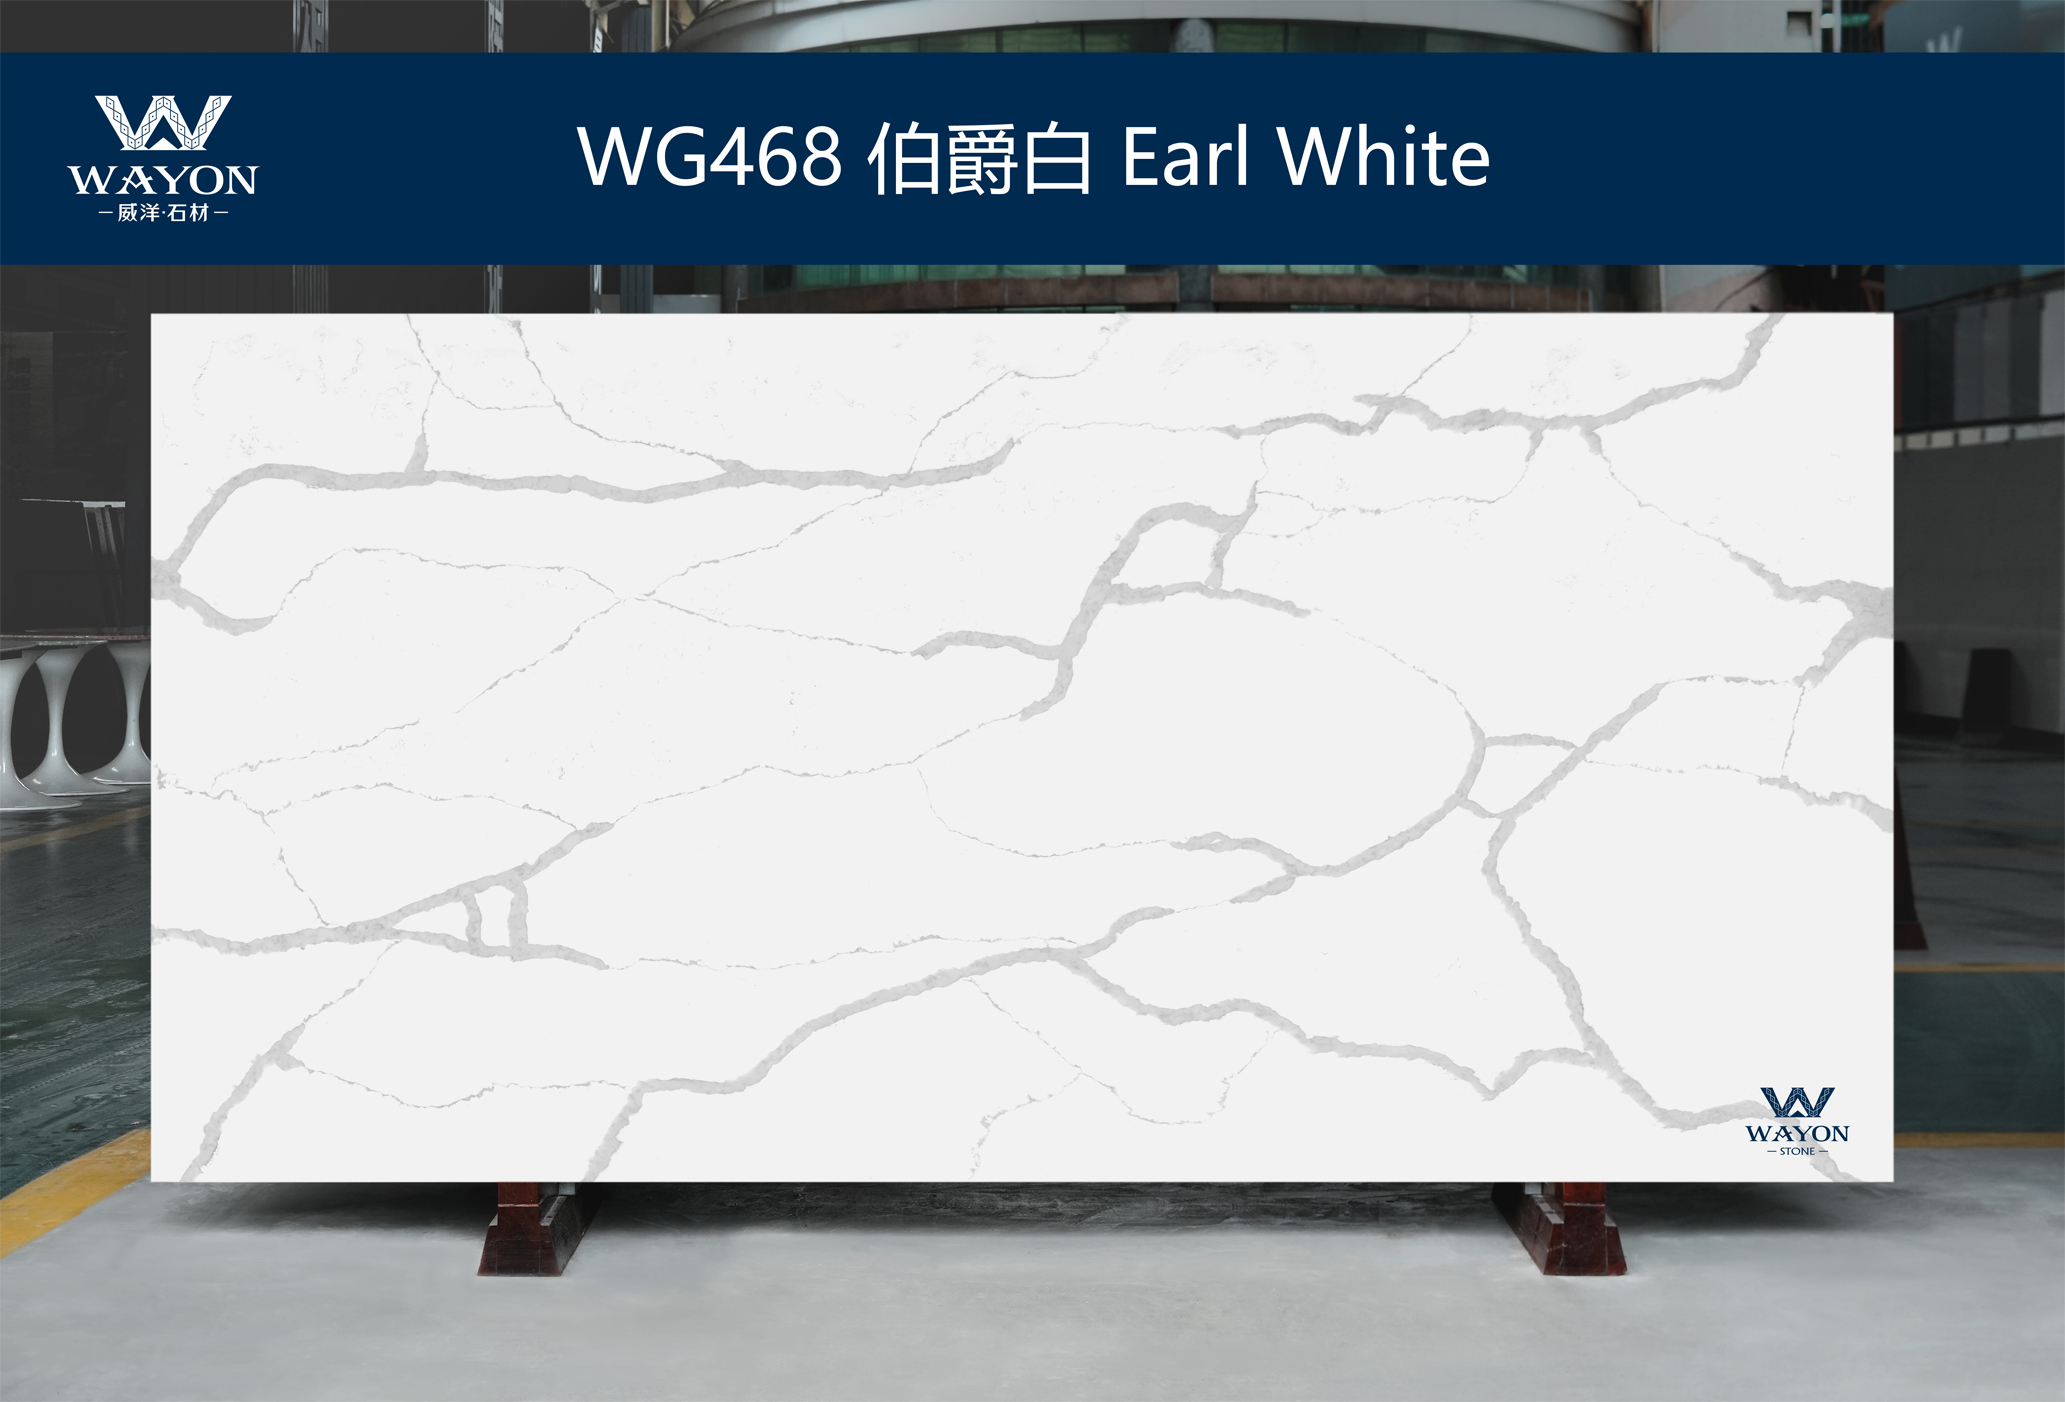 WG468 Earl White